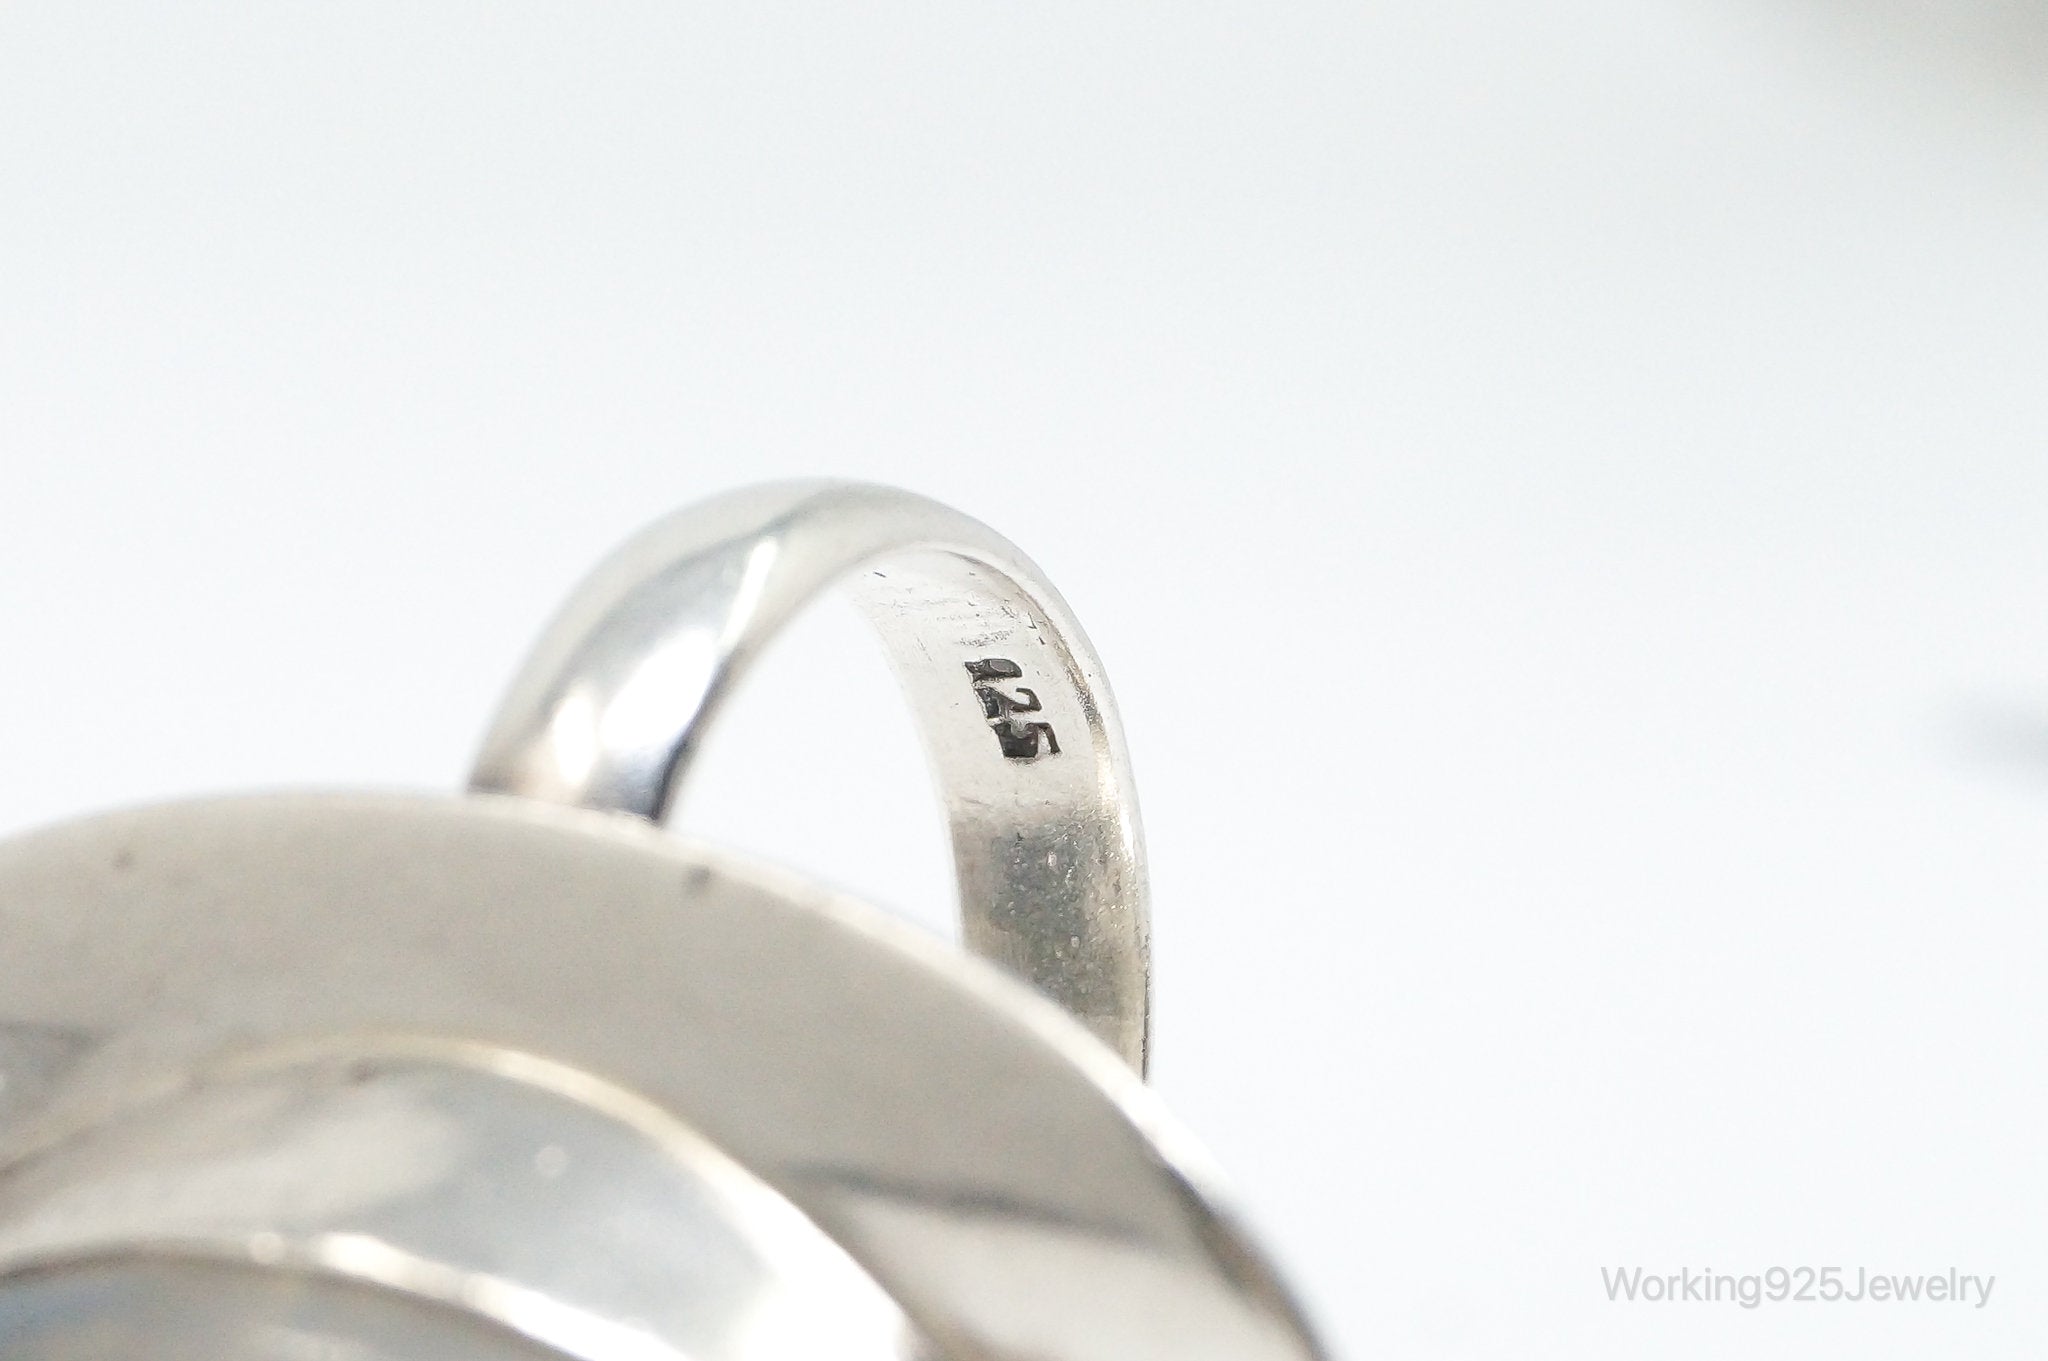 Vintage Moonstone Sterling Silver Ring - Size 8.25 Adjustable